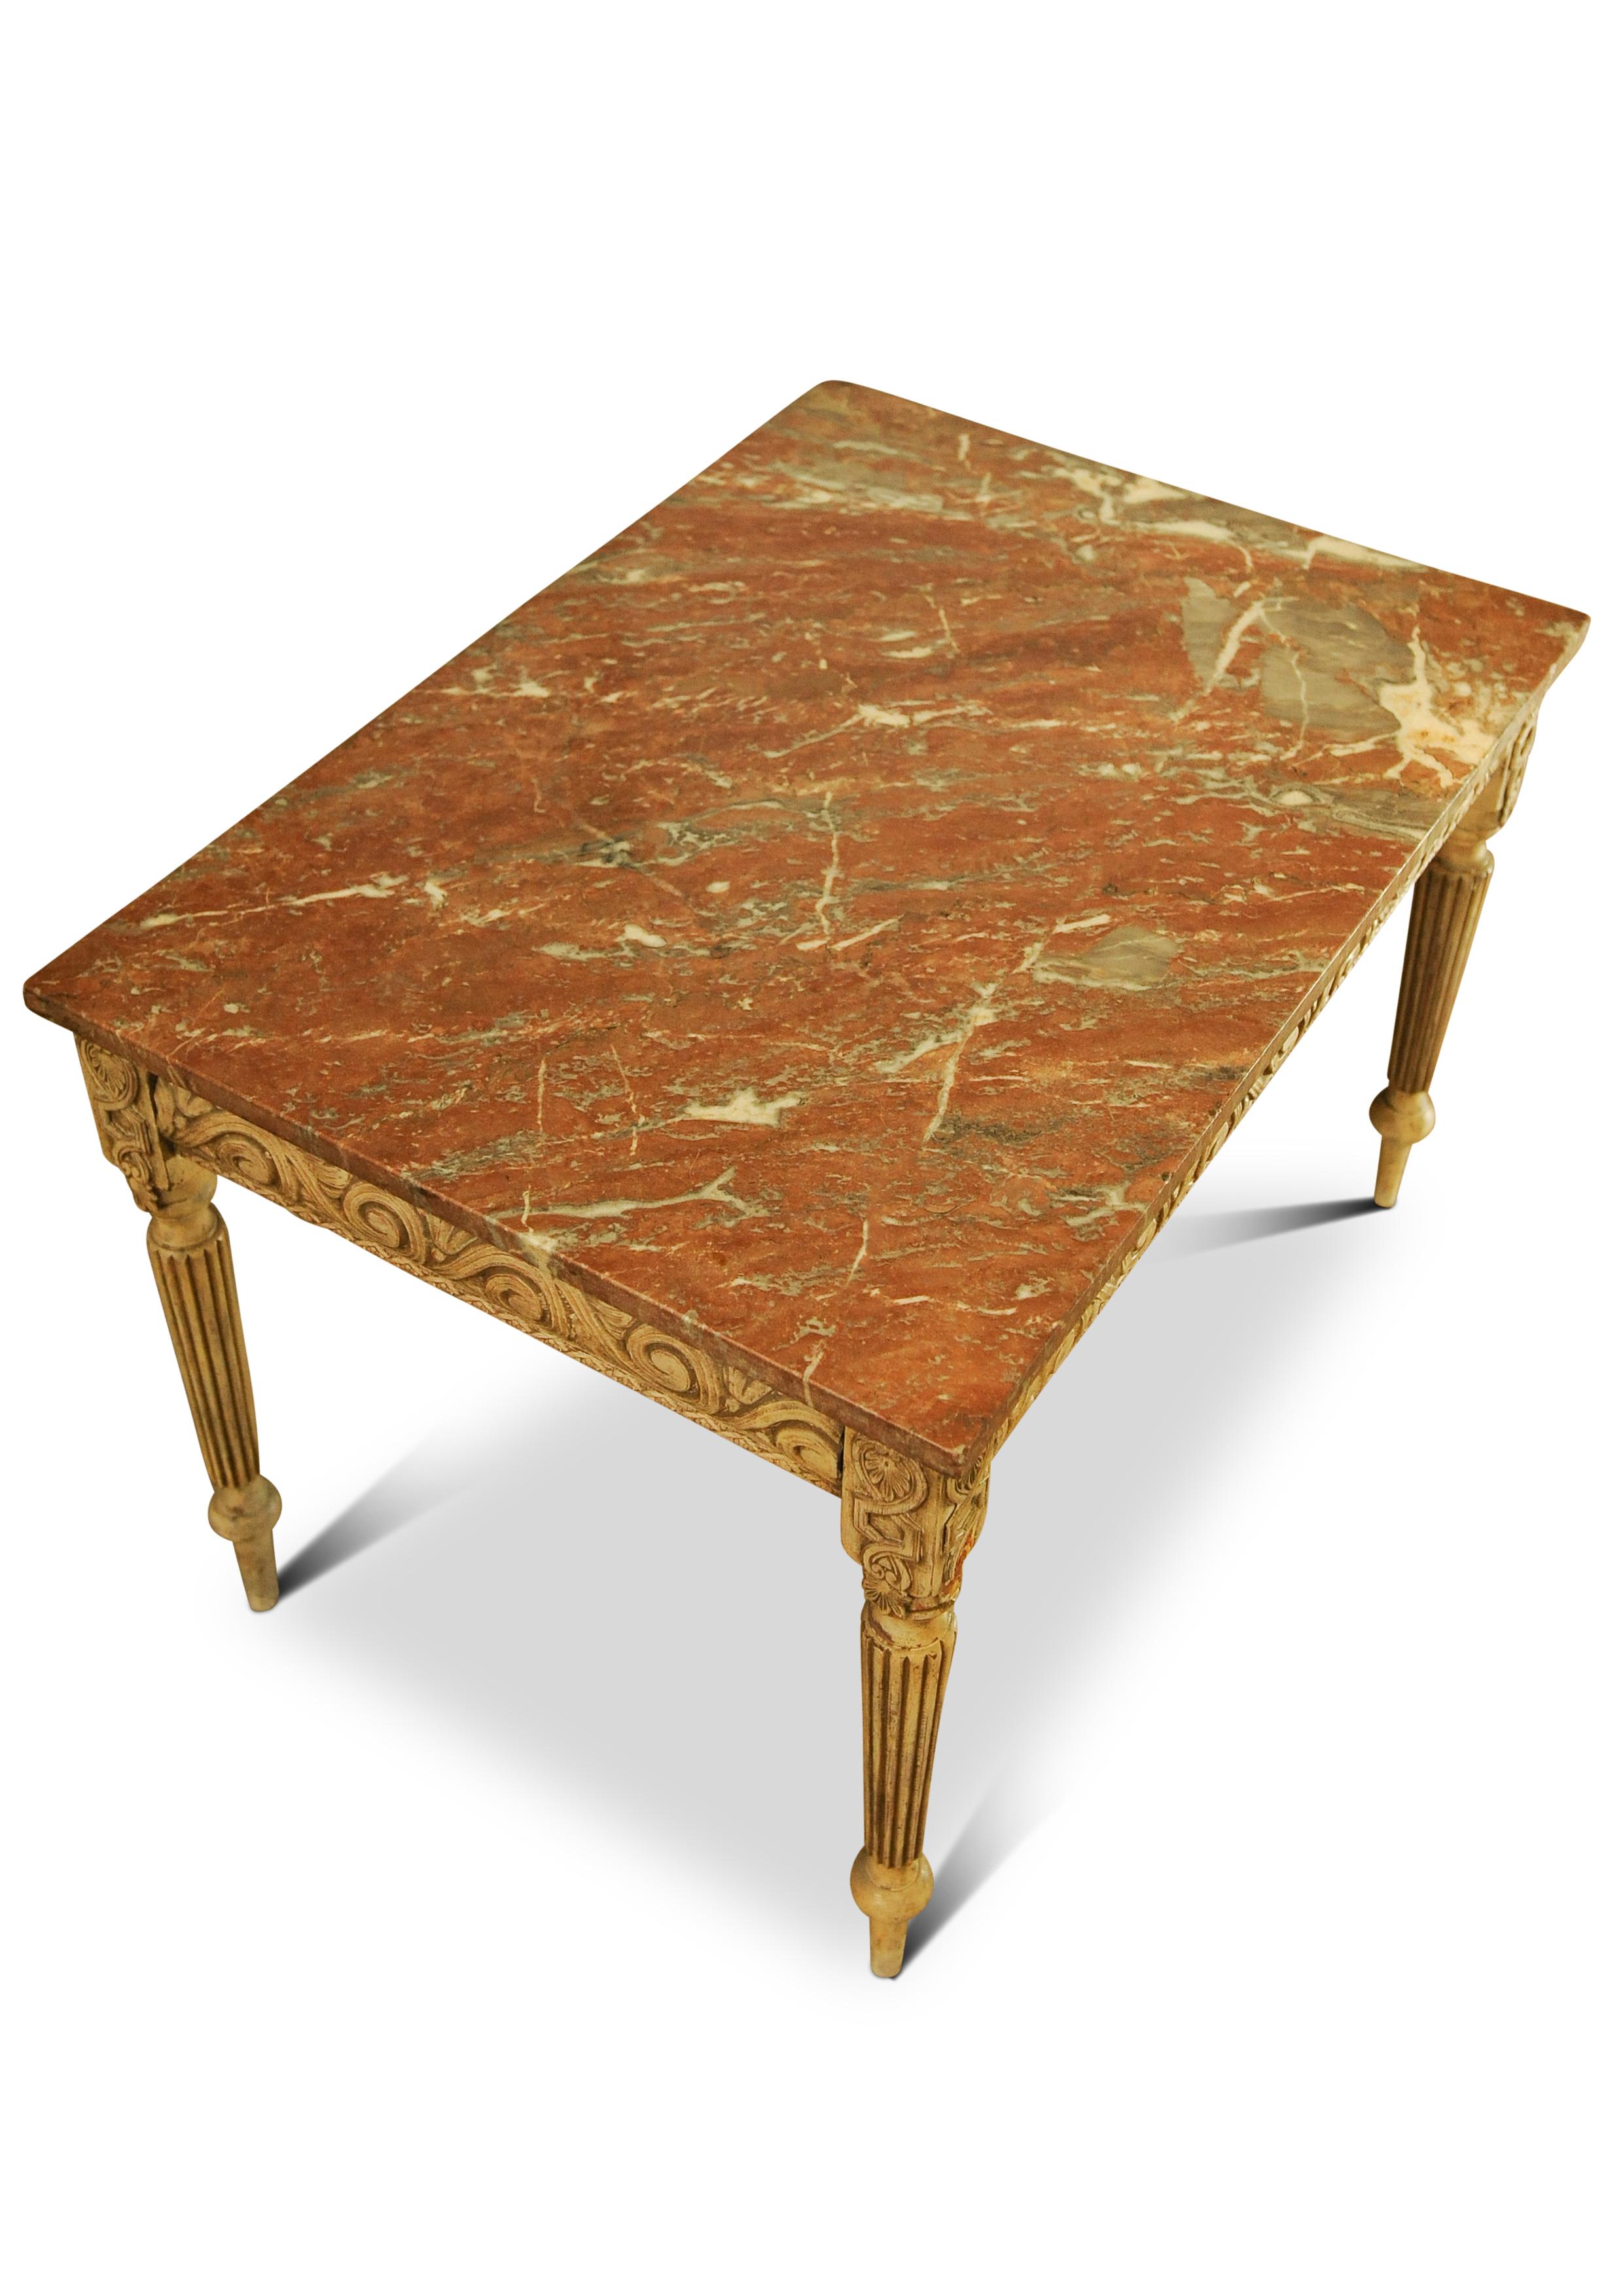 Table d'appoint Louis XVI à plateau en marbre rouge veiné, décorative et peinte reposant sur des pieds cannelés 1800

Le marbre peut être retiré de la base de la table.